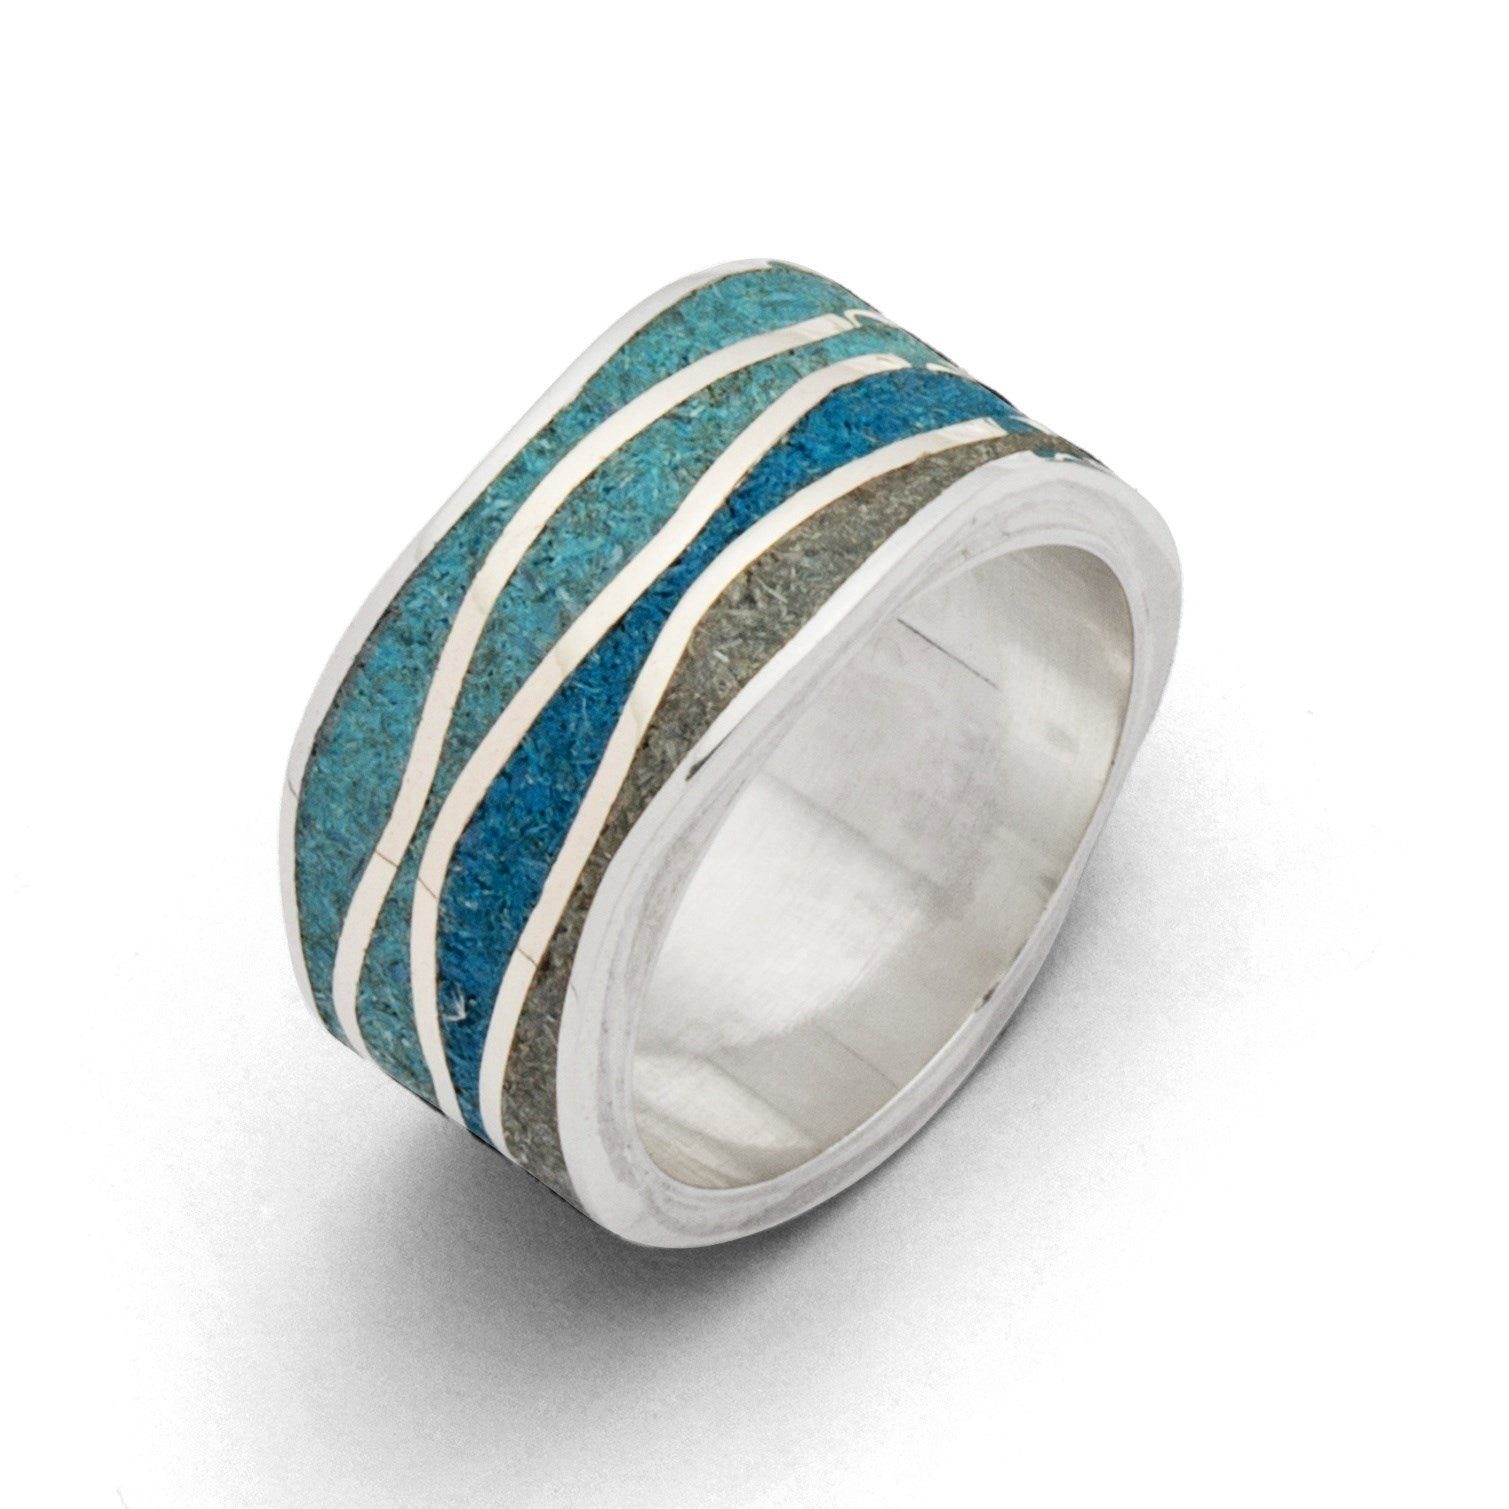 DUR Fingerring DUR Schmuck: Ring "Meeresblau" mit blauem und grauem Steinsand, R5106